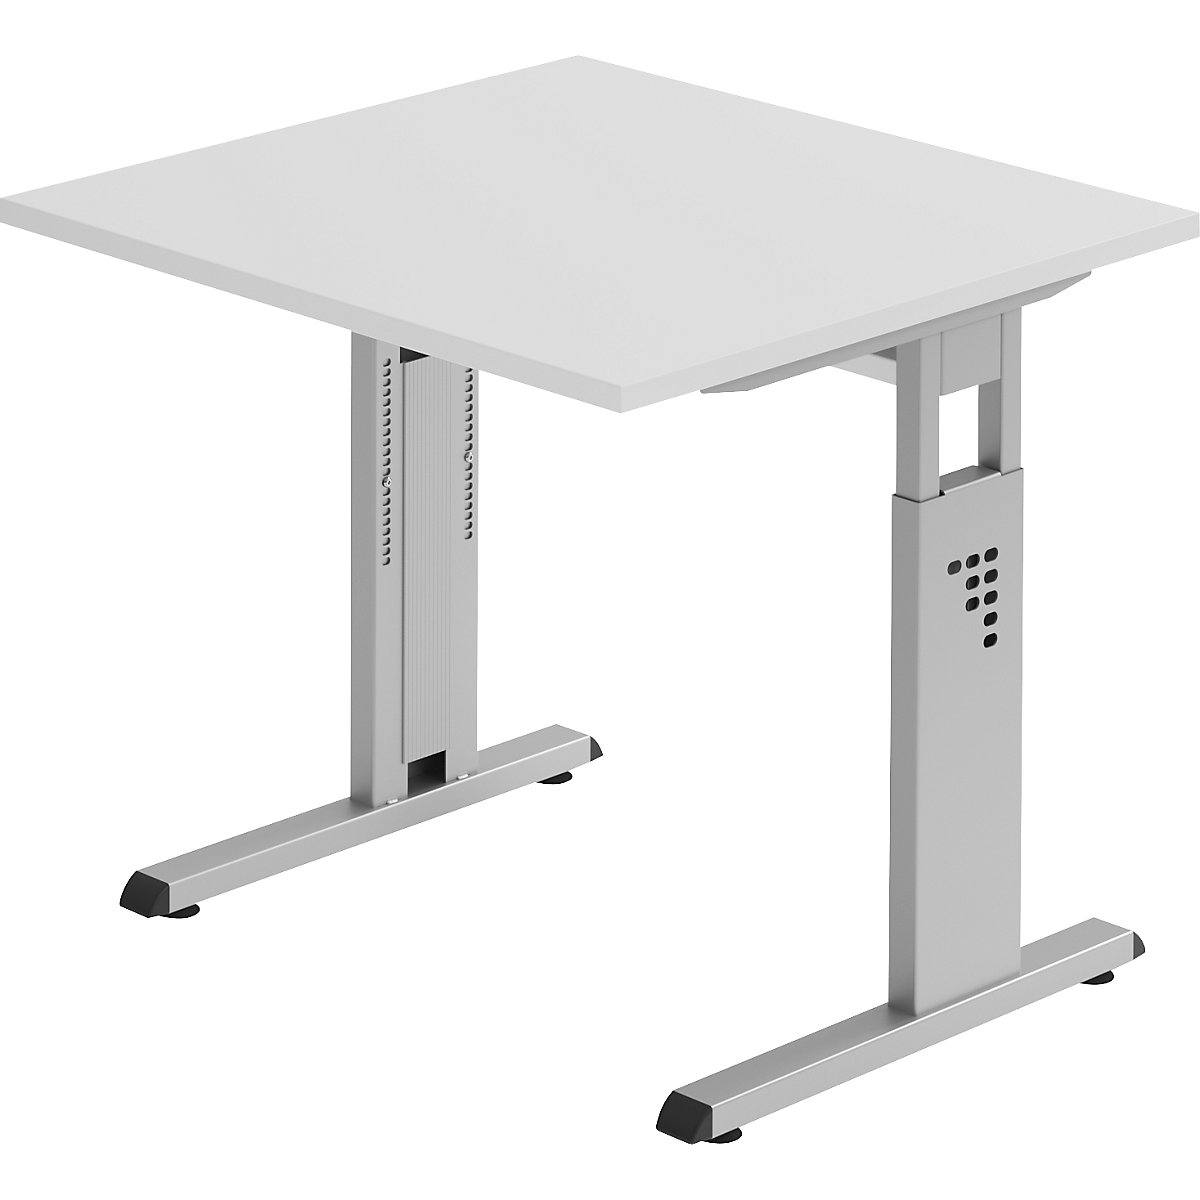 FINO Pisaći stol s postoljem u obliku slova C, namještanje visine u rasponu od 680 – 760 mm, ŠxD 800 x 800 mm, u svijetlosivoj boji